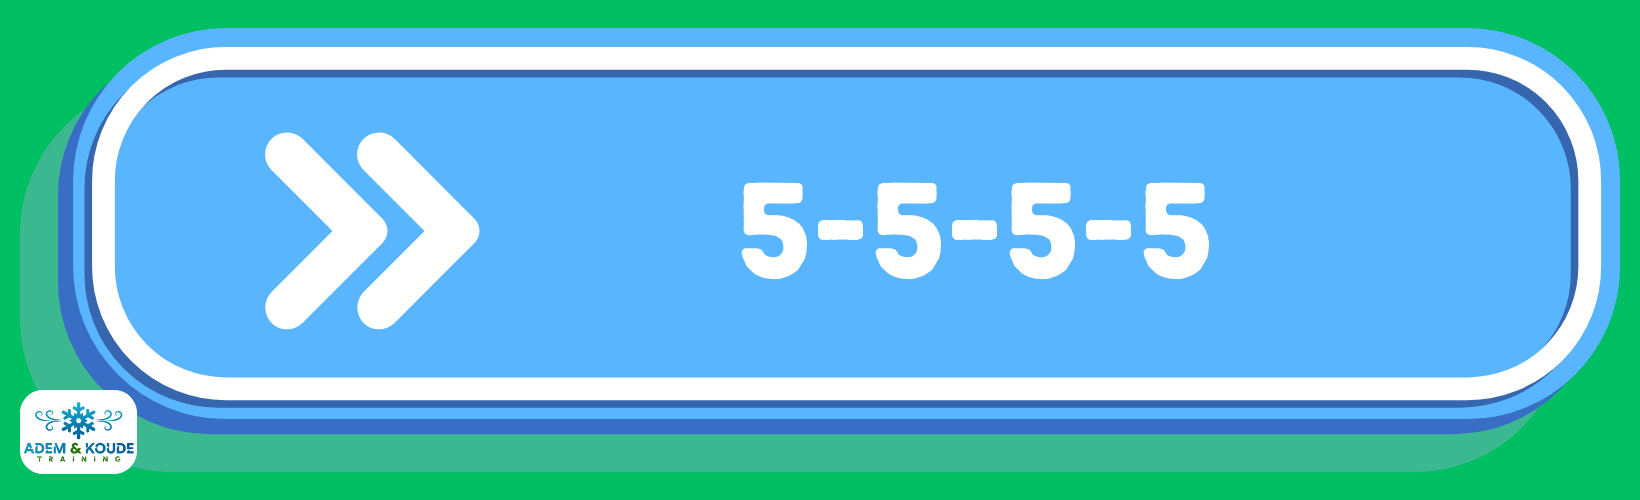 groen plaatje met blauwe wegwijzer met witte letters 5-5-5-5